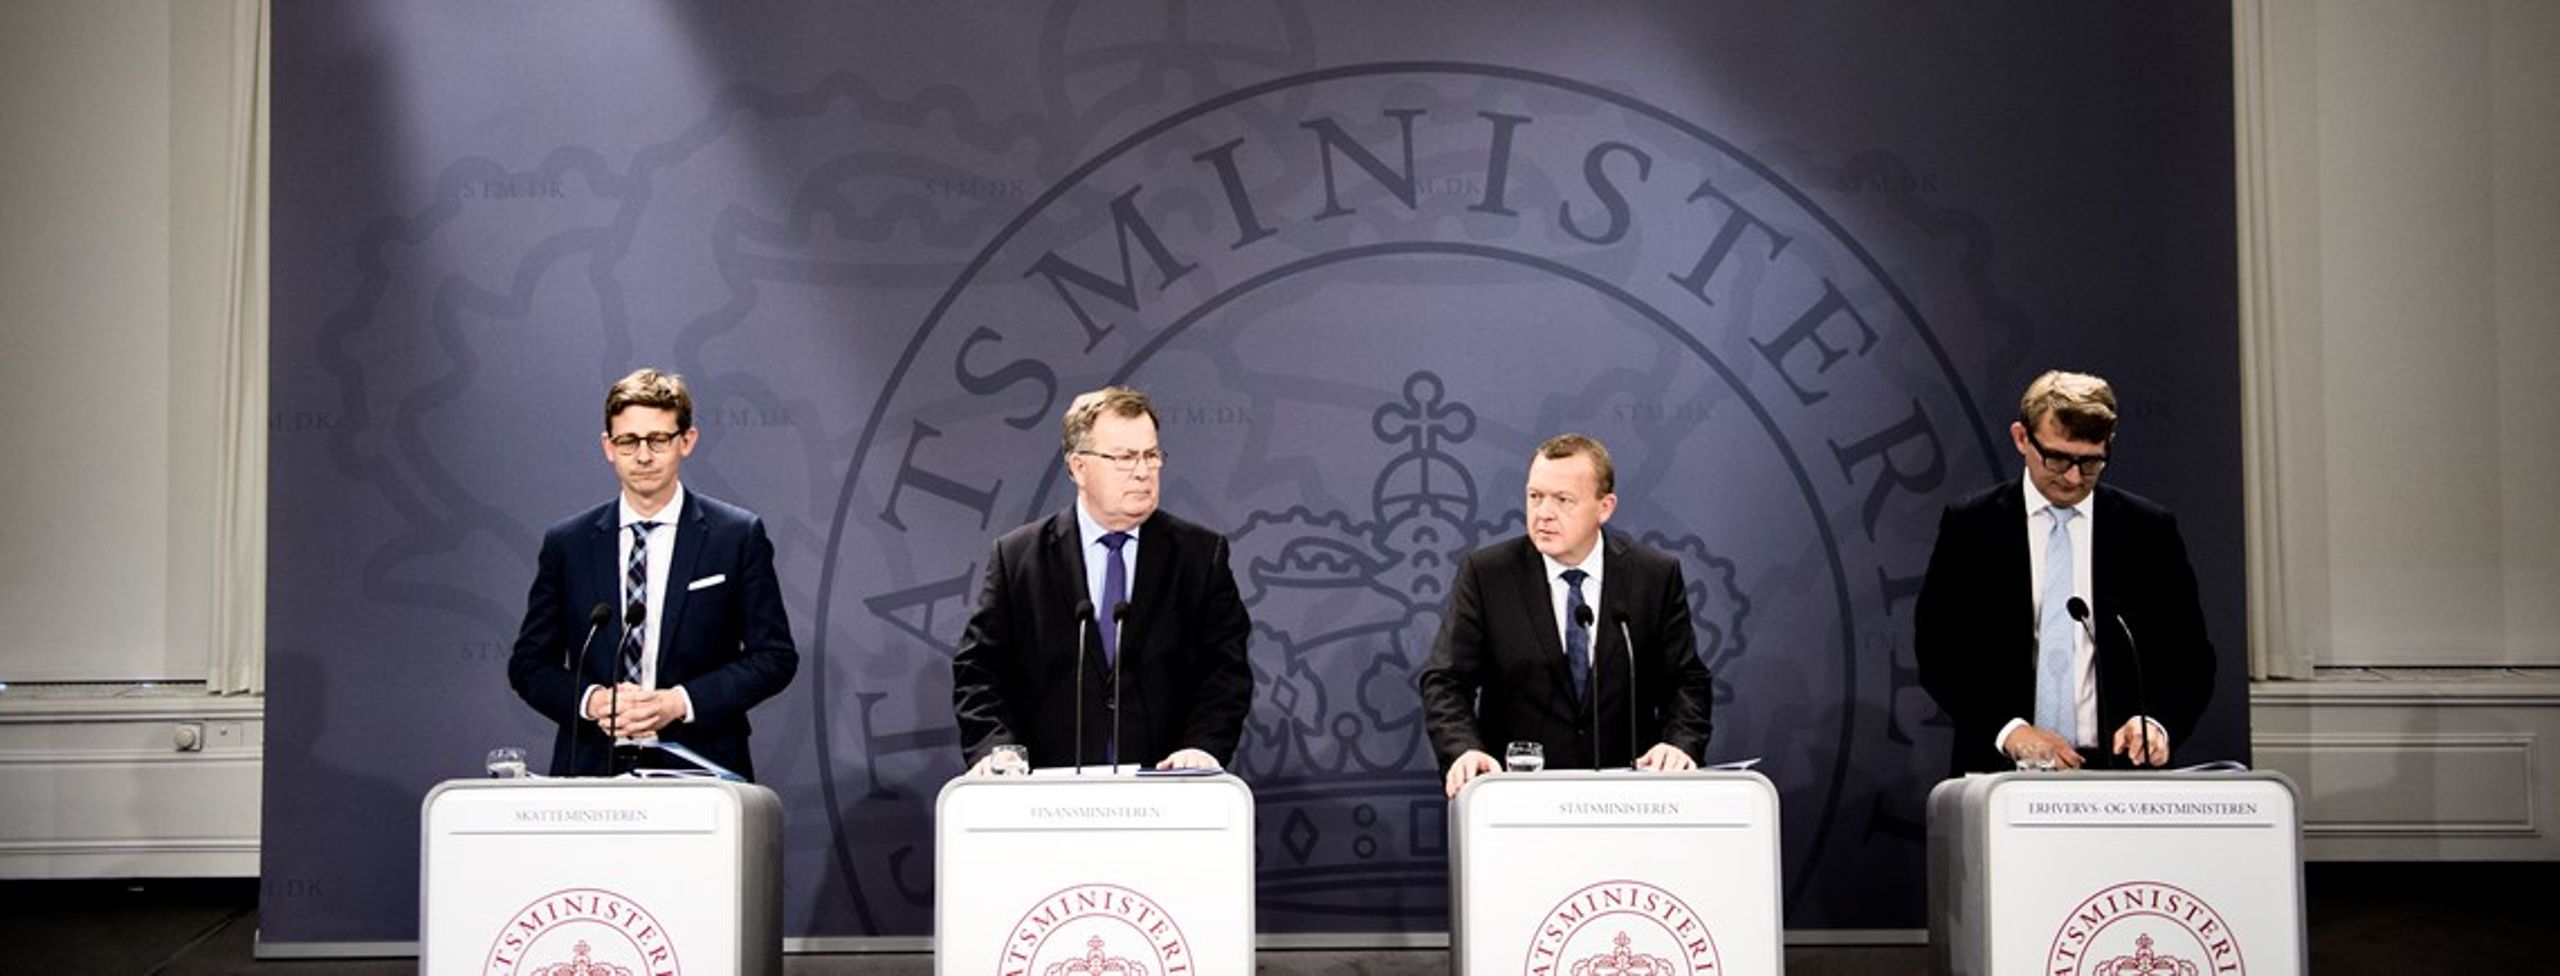 Statsmininster Lars Løkke Rasmussen og finansminister Claus Hjort Frederiksen indtager naturligt de øverste pladser i regeringens hierarki.<br>